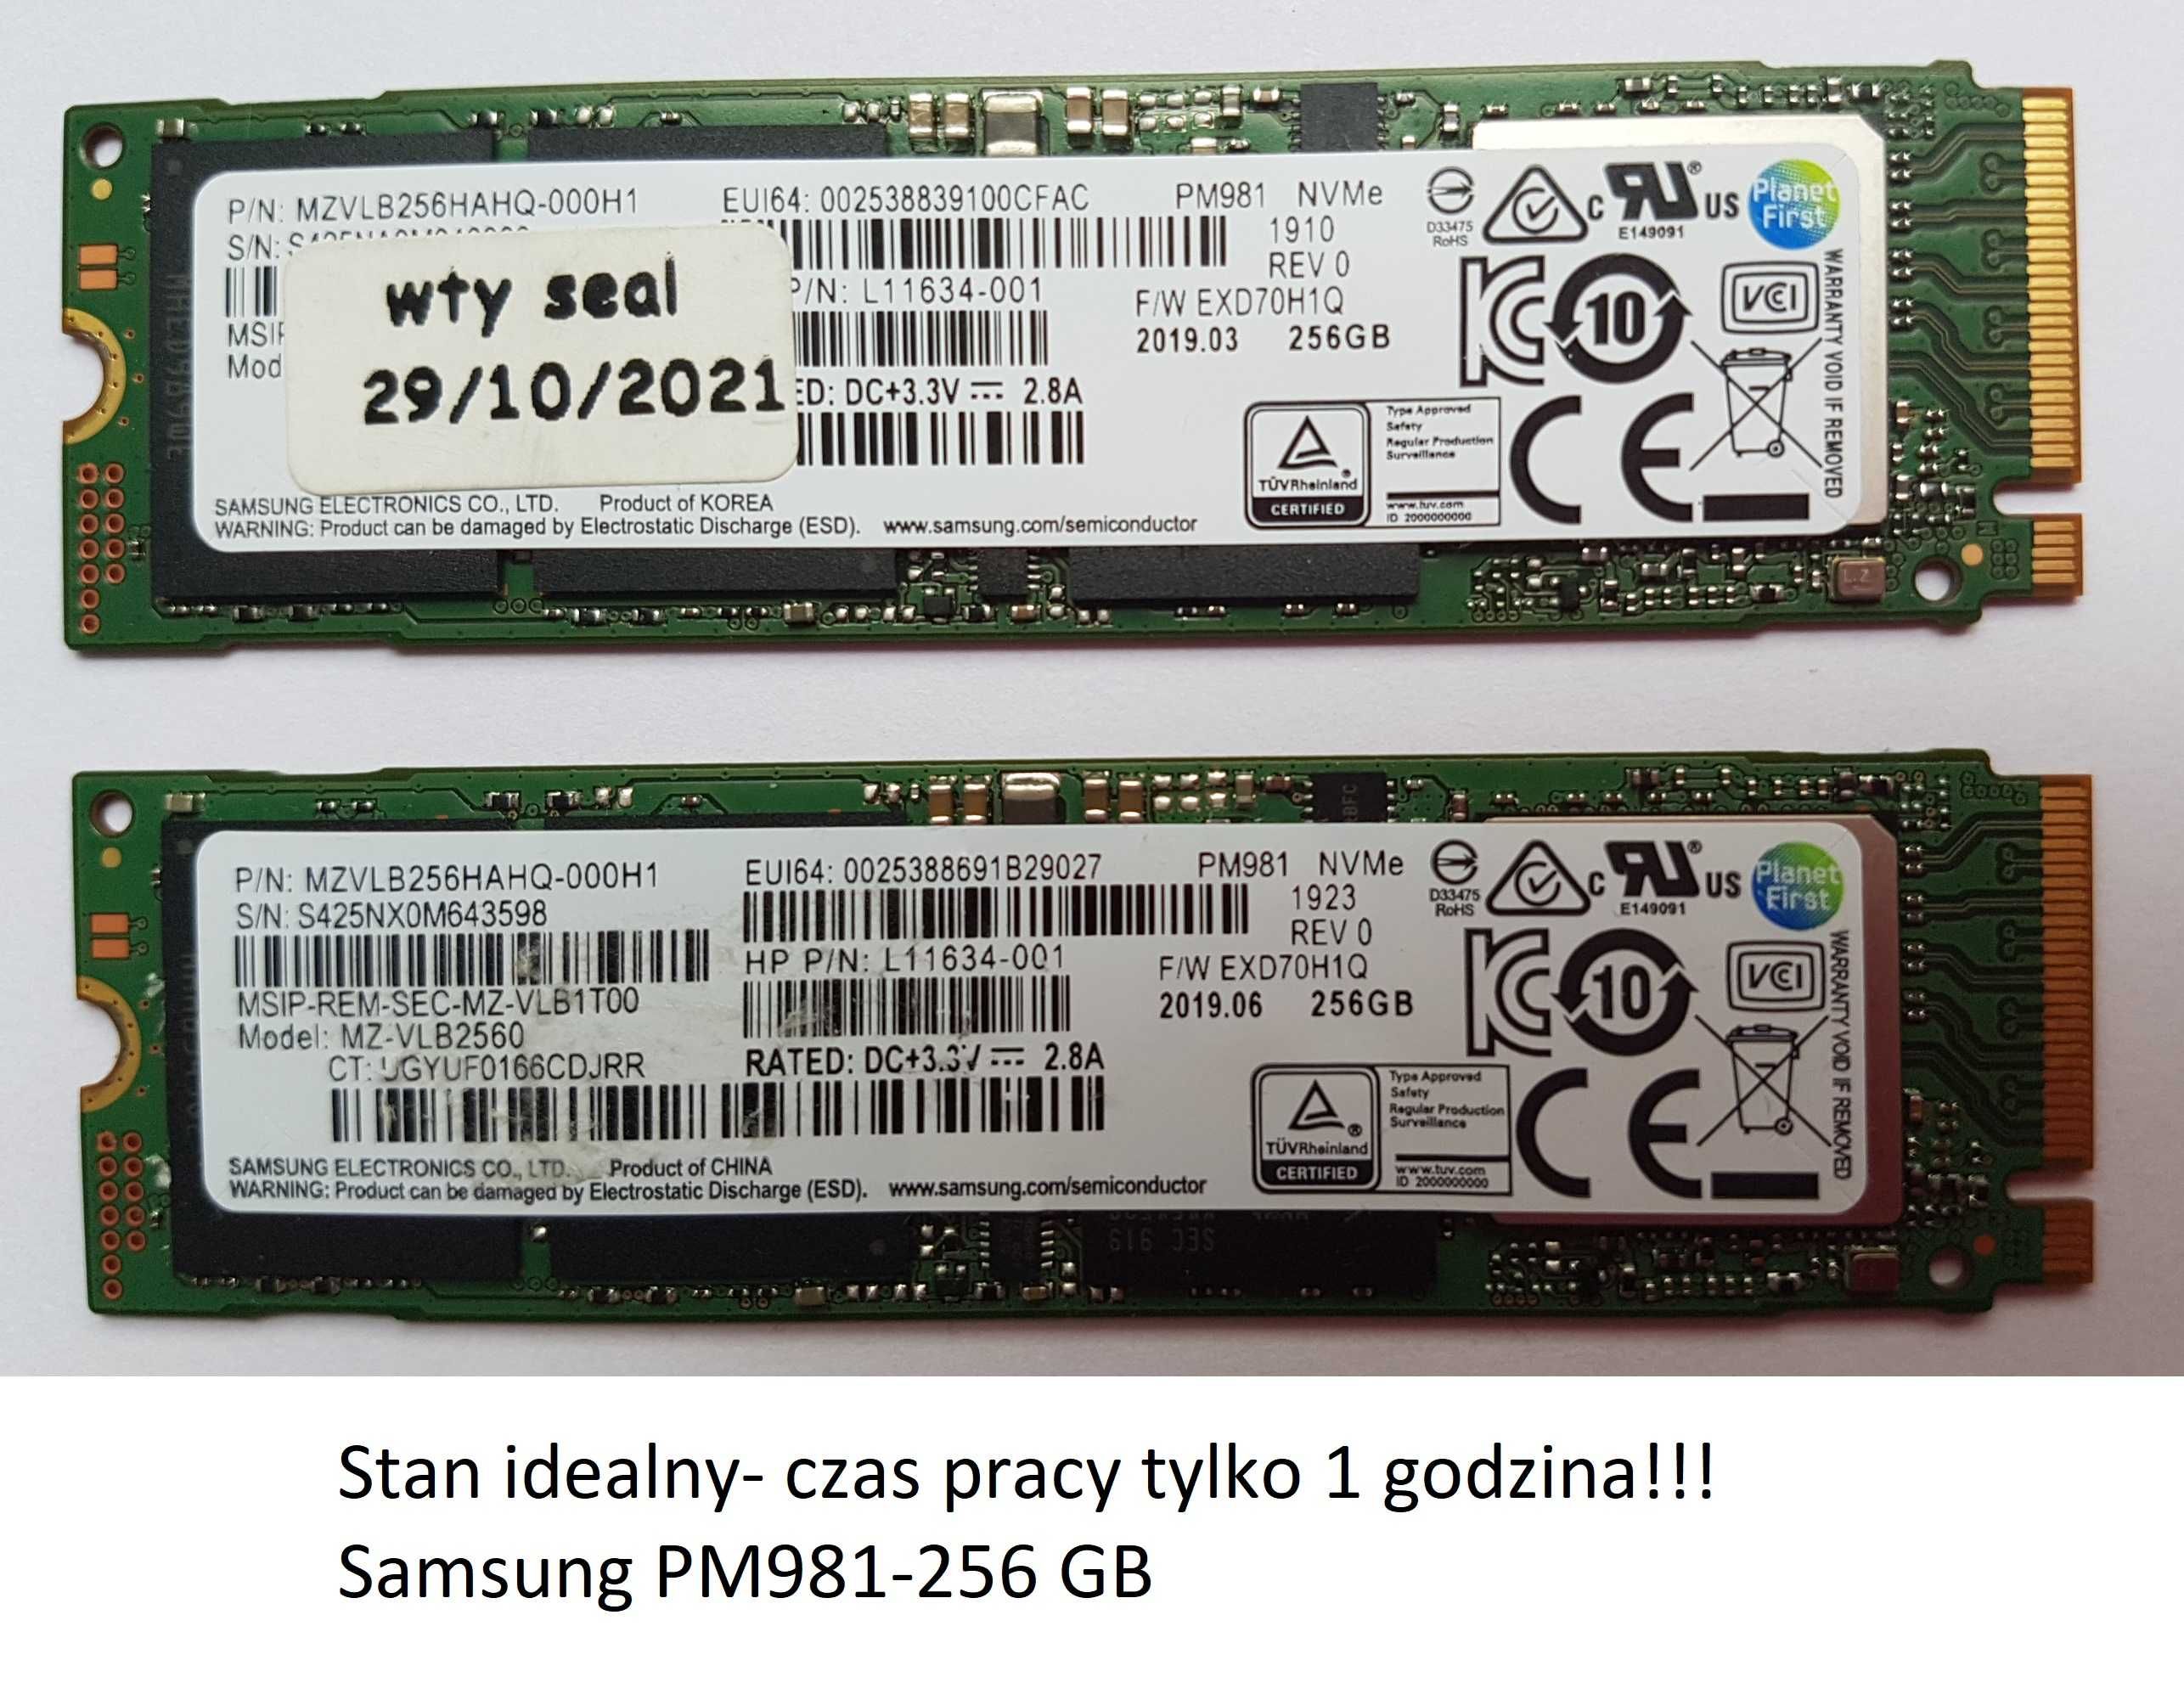 Samsung-stan idealny dysk ssd- 256gb. Polecam inne modele.